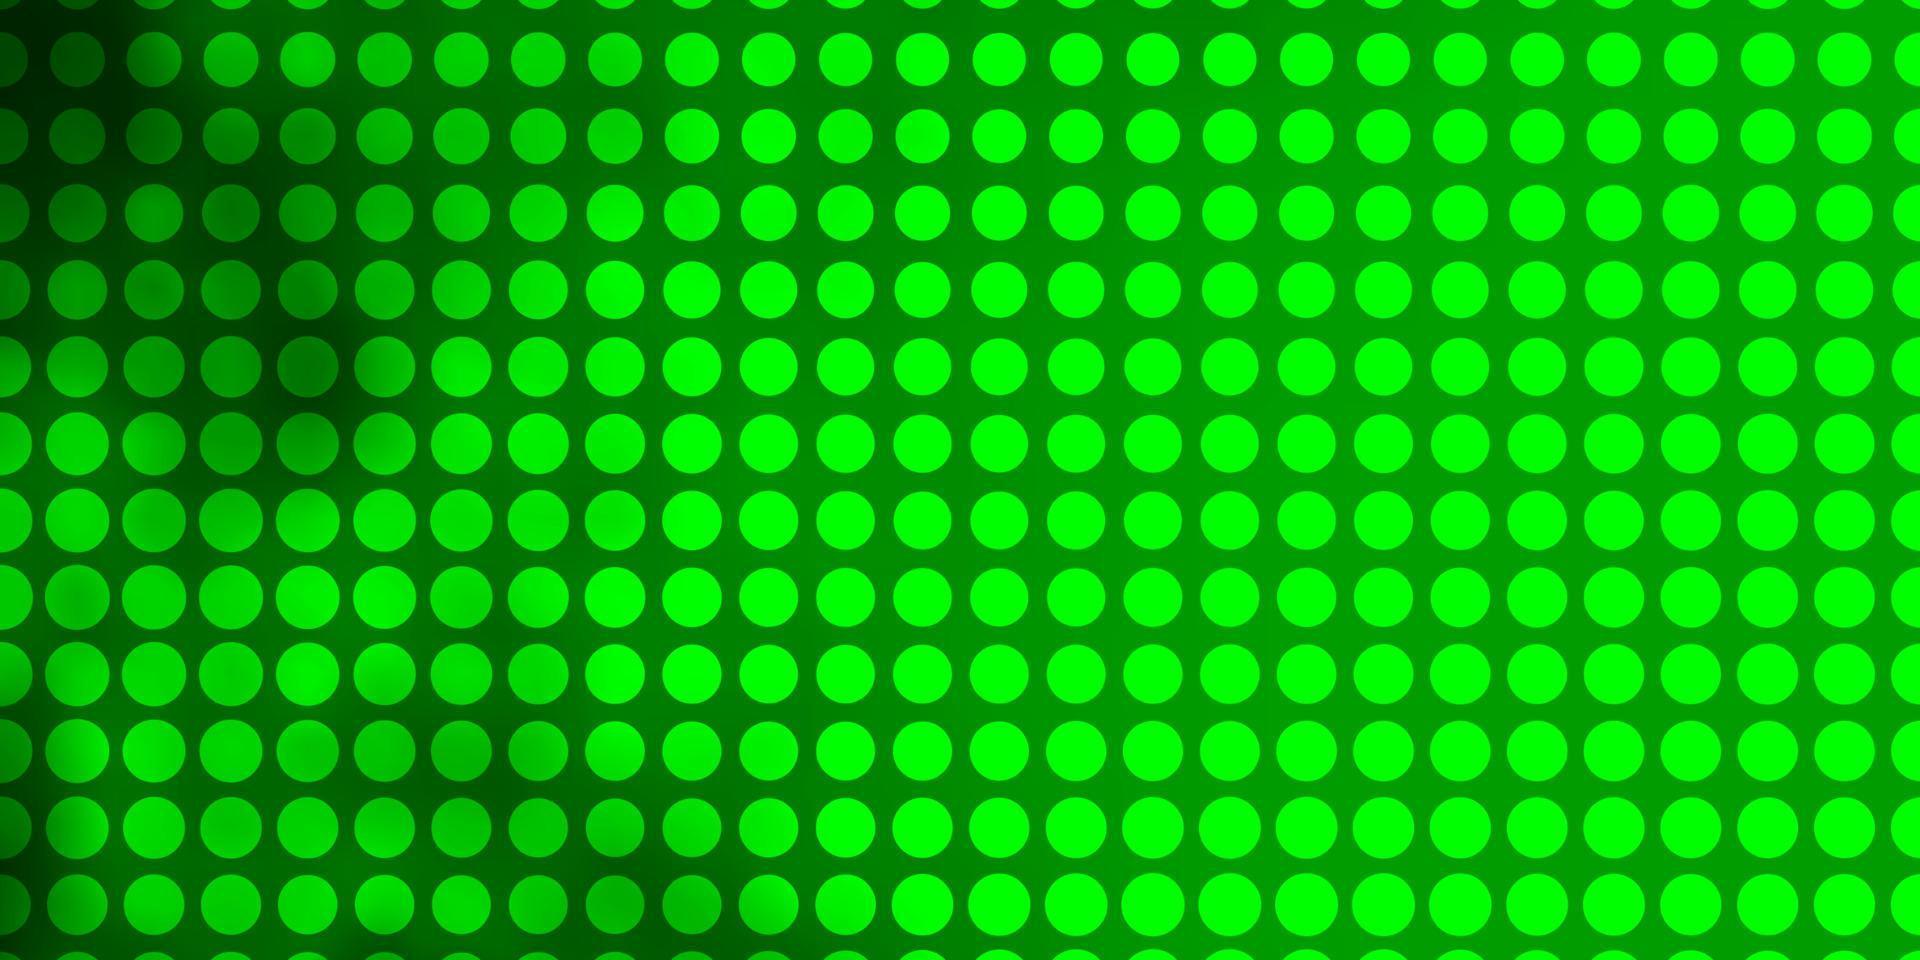 ljusgrön vektorbakgrund med cirklar. vektor